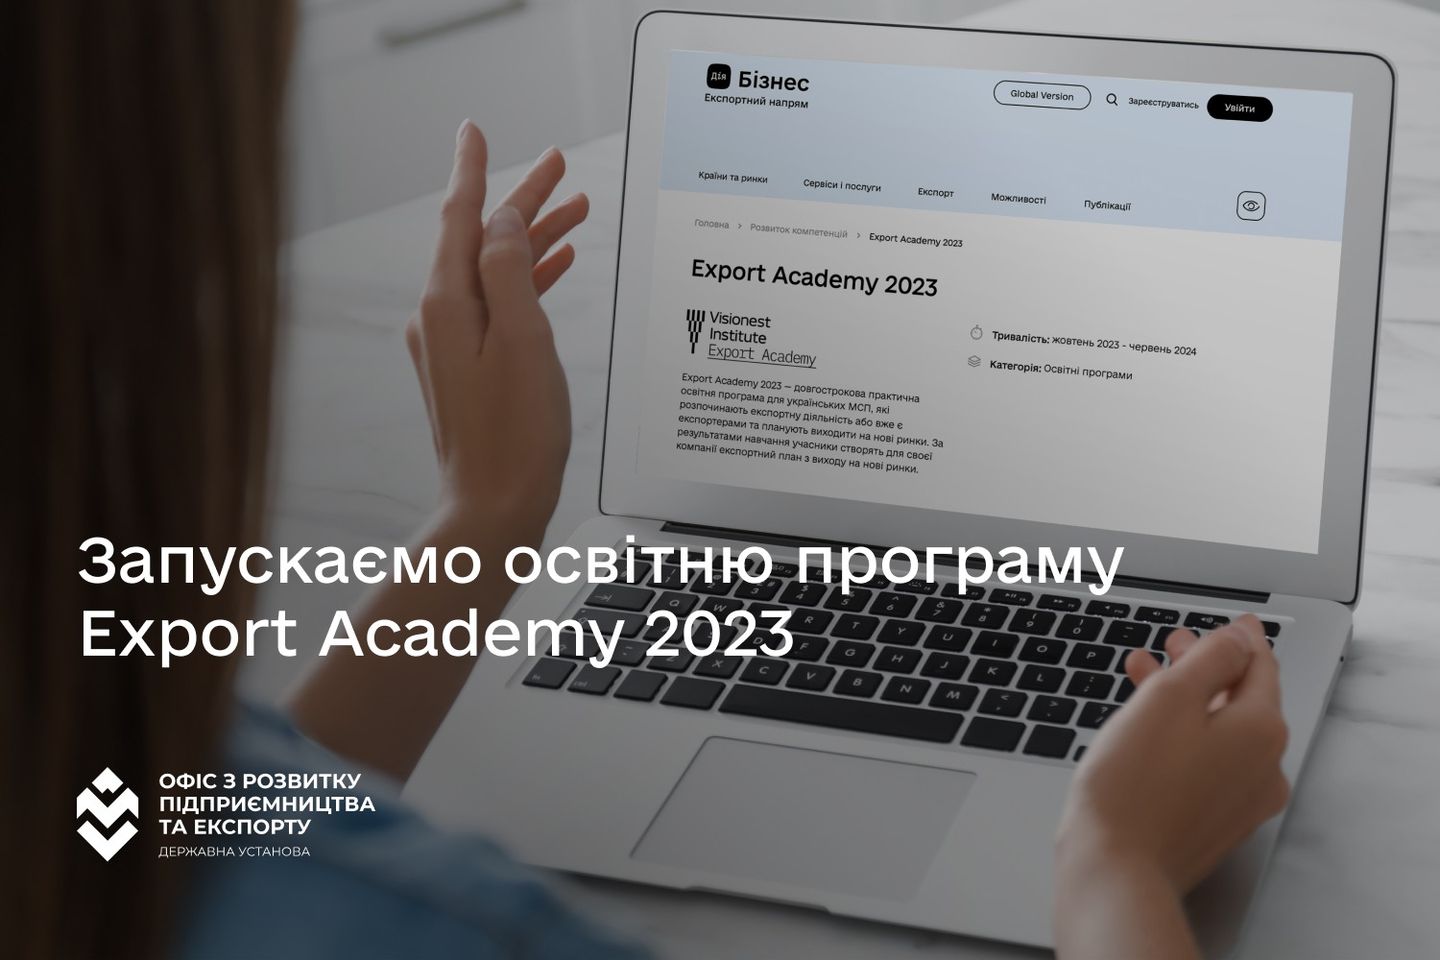 Українських експортерів із усіх галузей виробництва запрошують на довгострокову практичну навчальну програму Export Academy 2023